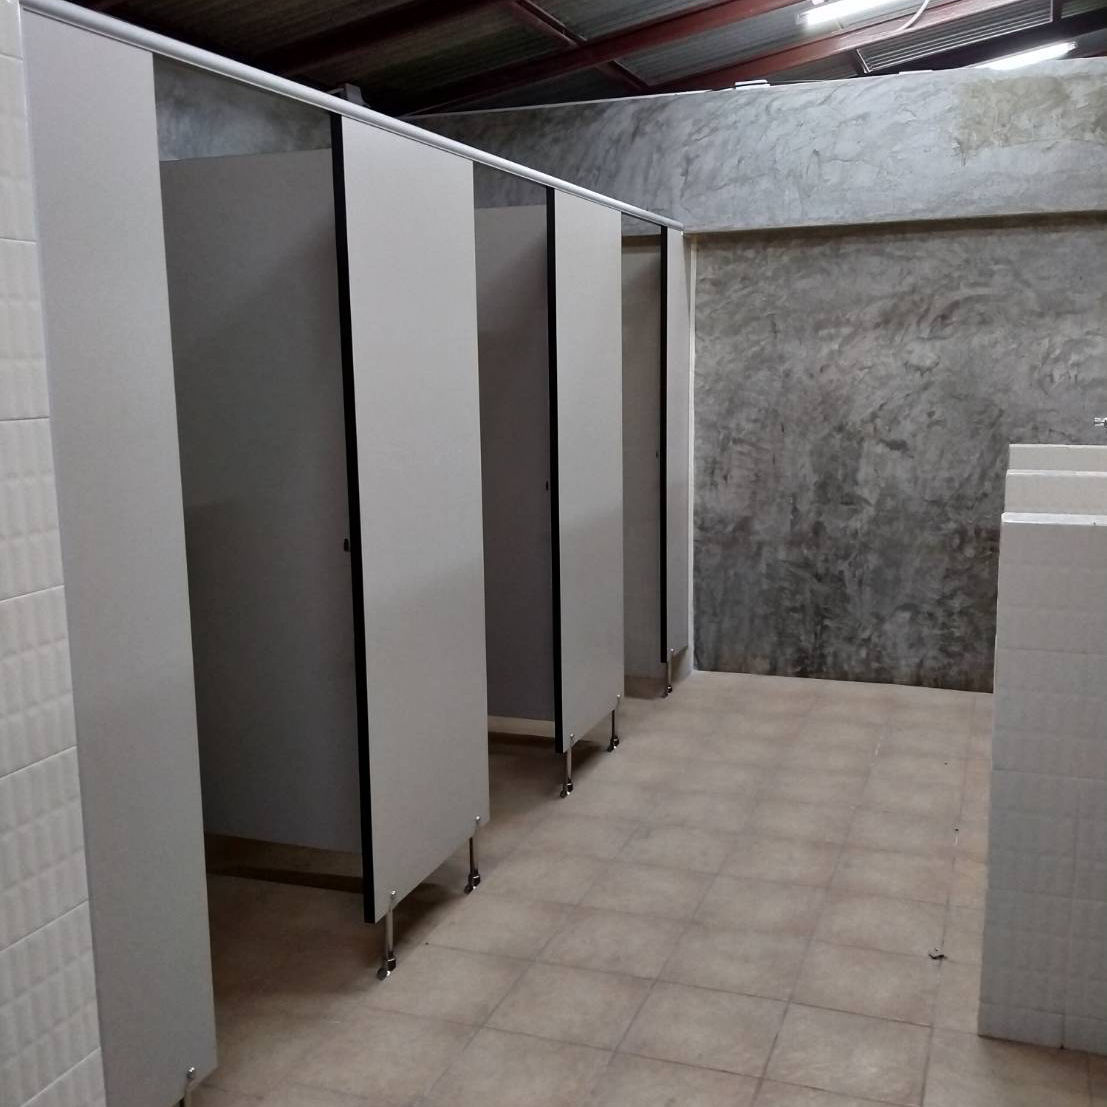 ผนังกั้นห้องน้ำสำเร็จรูปสีเบจความหนา 28 mm PB.04 คุณภาพดี เหมาะกับงานพาติชั่นกั้นห้องน้ำโดยเฉพาะเช่น ห้องน้ำโรงเรียน ห้องน้ำออฟฟิศ ห้องน้ำสาธารณะ